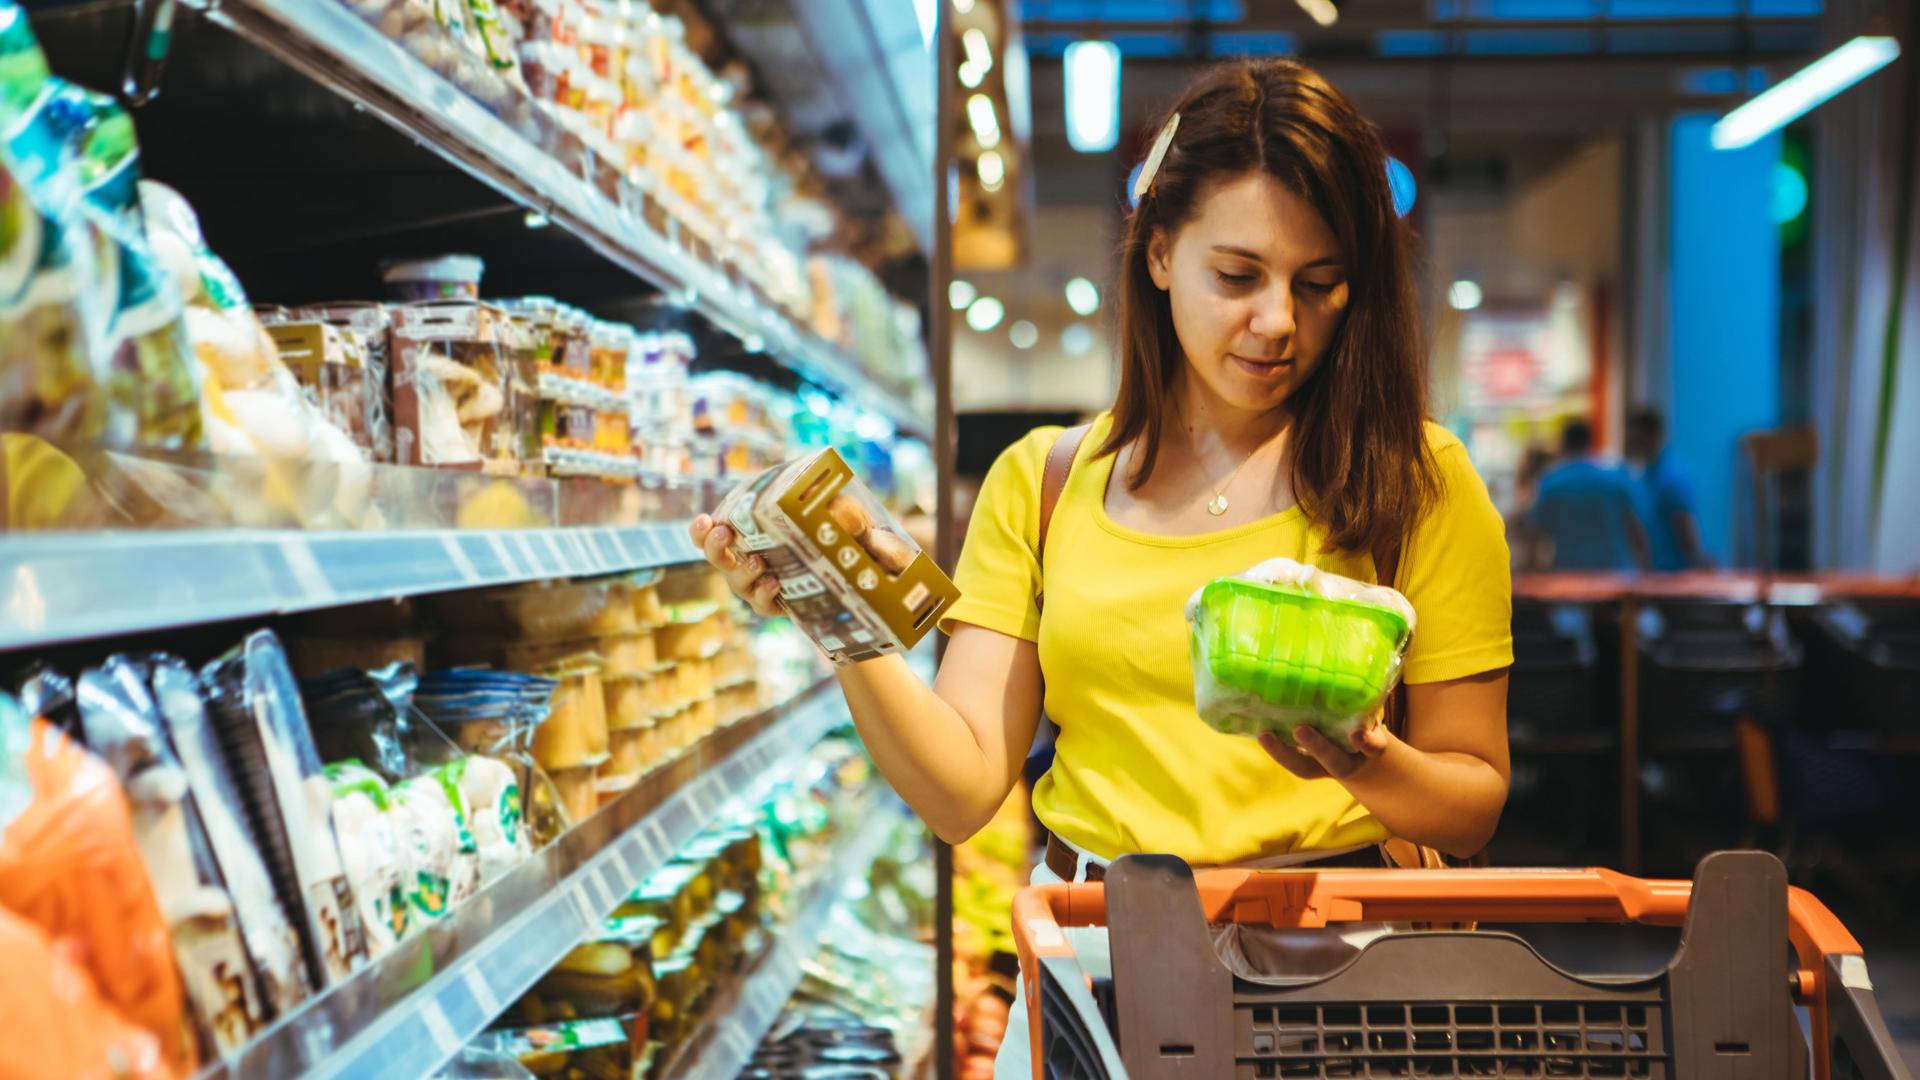 Eine Frau im gelben T-Shirt steht mit einem Einkaufswagen vorm Kühlregal. Sie schaut sich die Produkte genauer an.